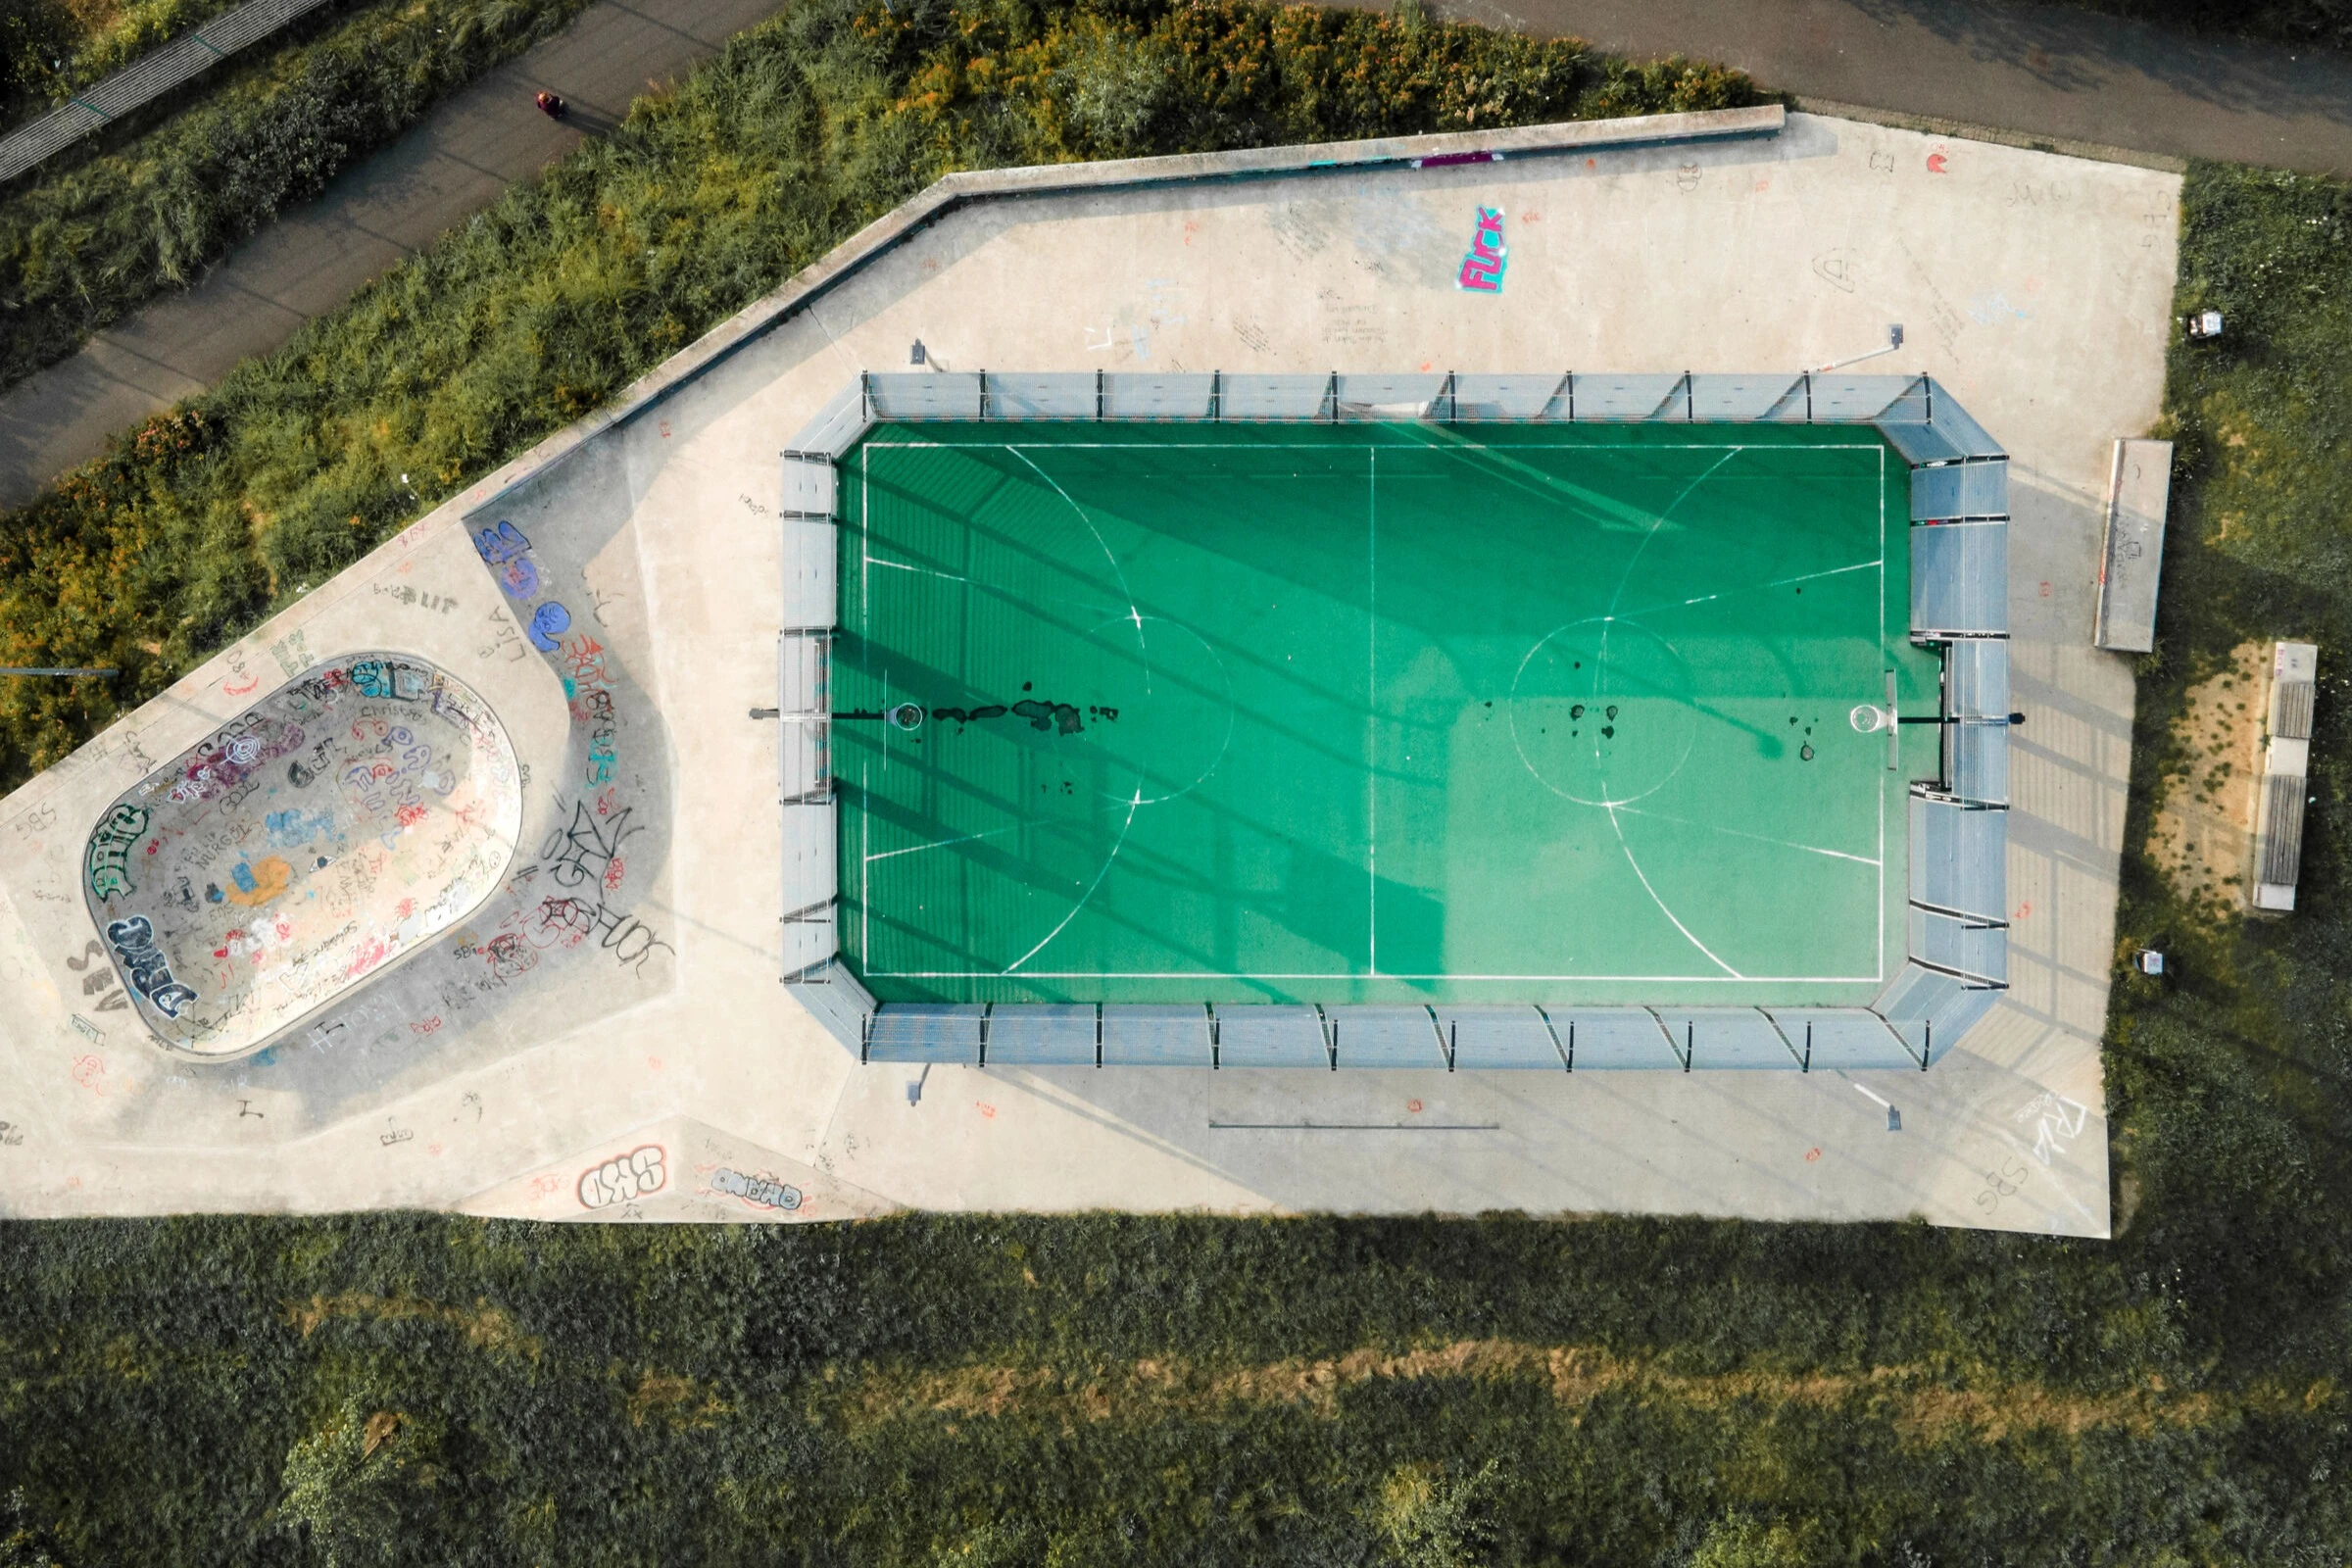 terrain de sport vu d'en haut, photographie par drone.